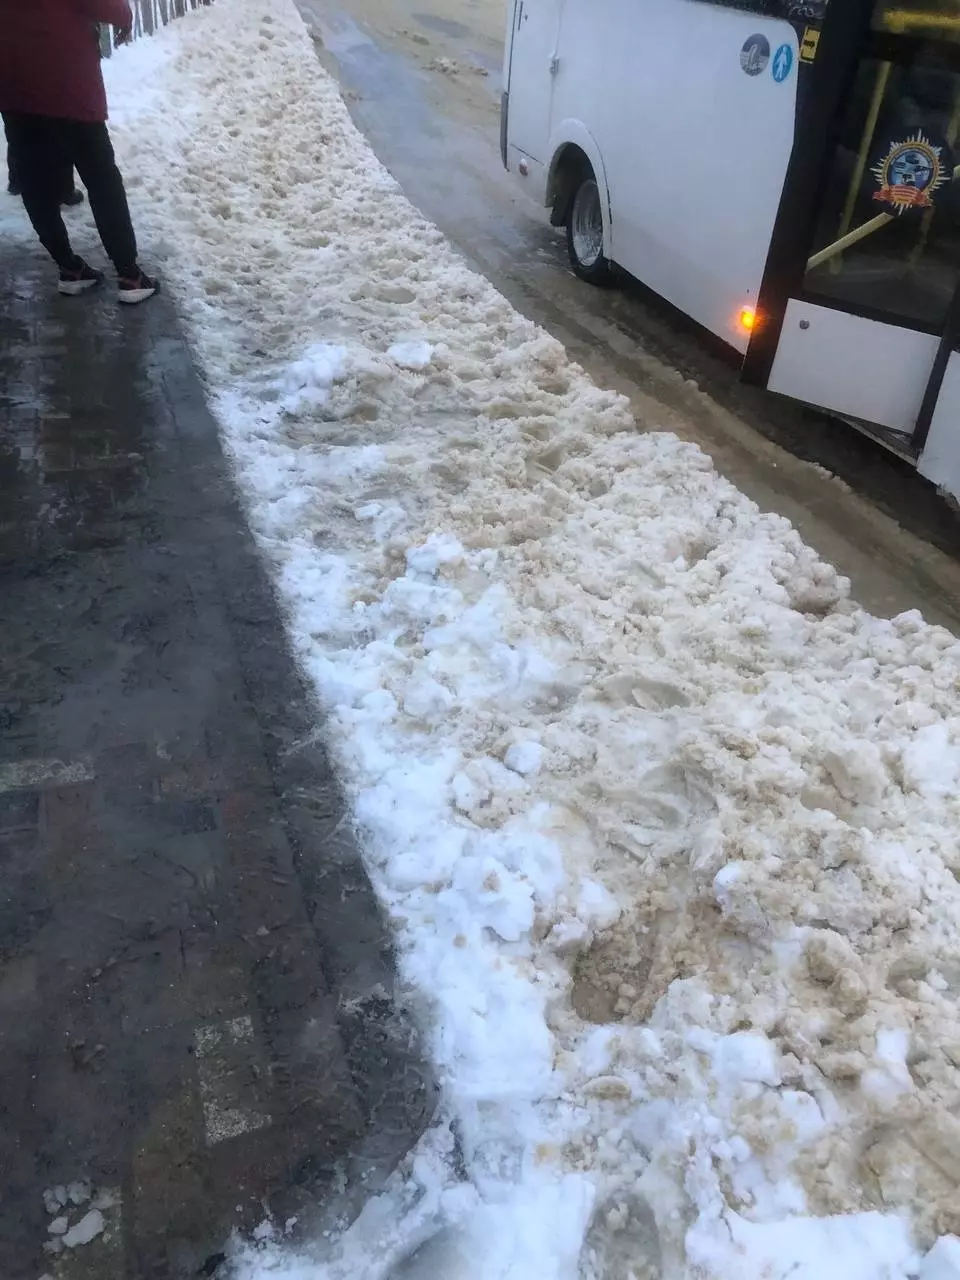  А на остановке МЖК, по словам ставропольцев, глыбы снега превратились в кашу и не позволяют водителям подъехать к площадке, поэтому пассажиров высаживают прямо на дороге. Авось, повезет.